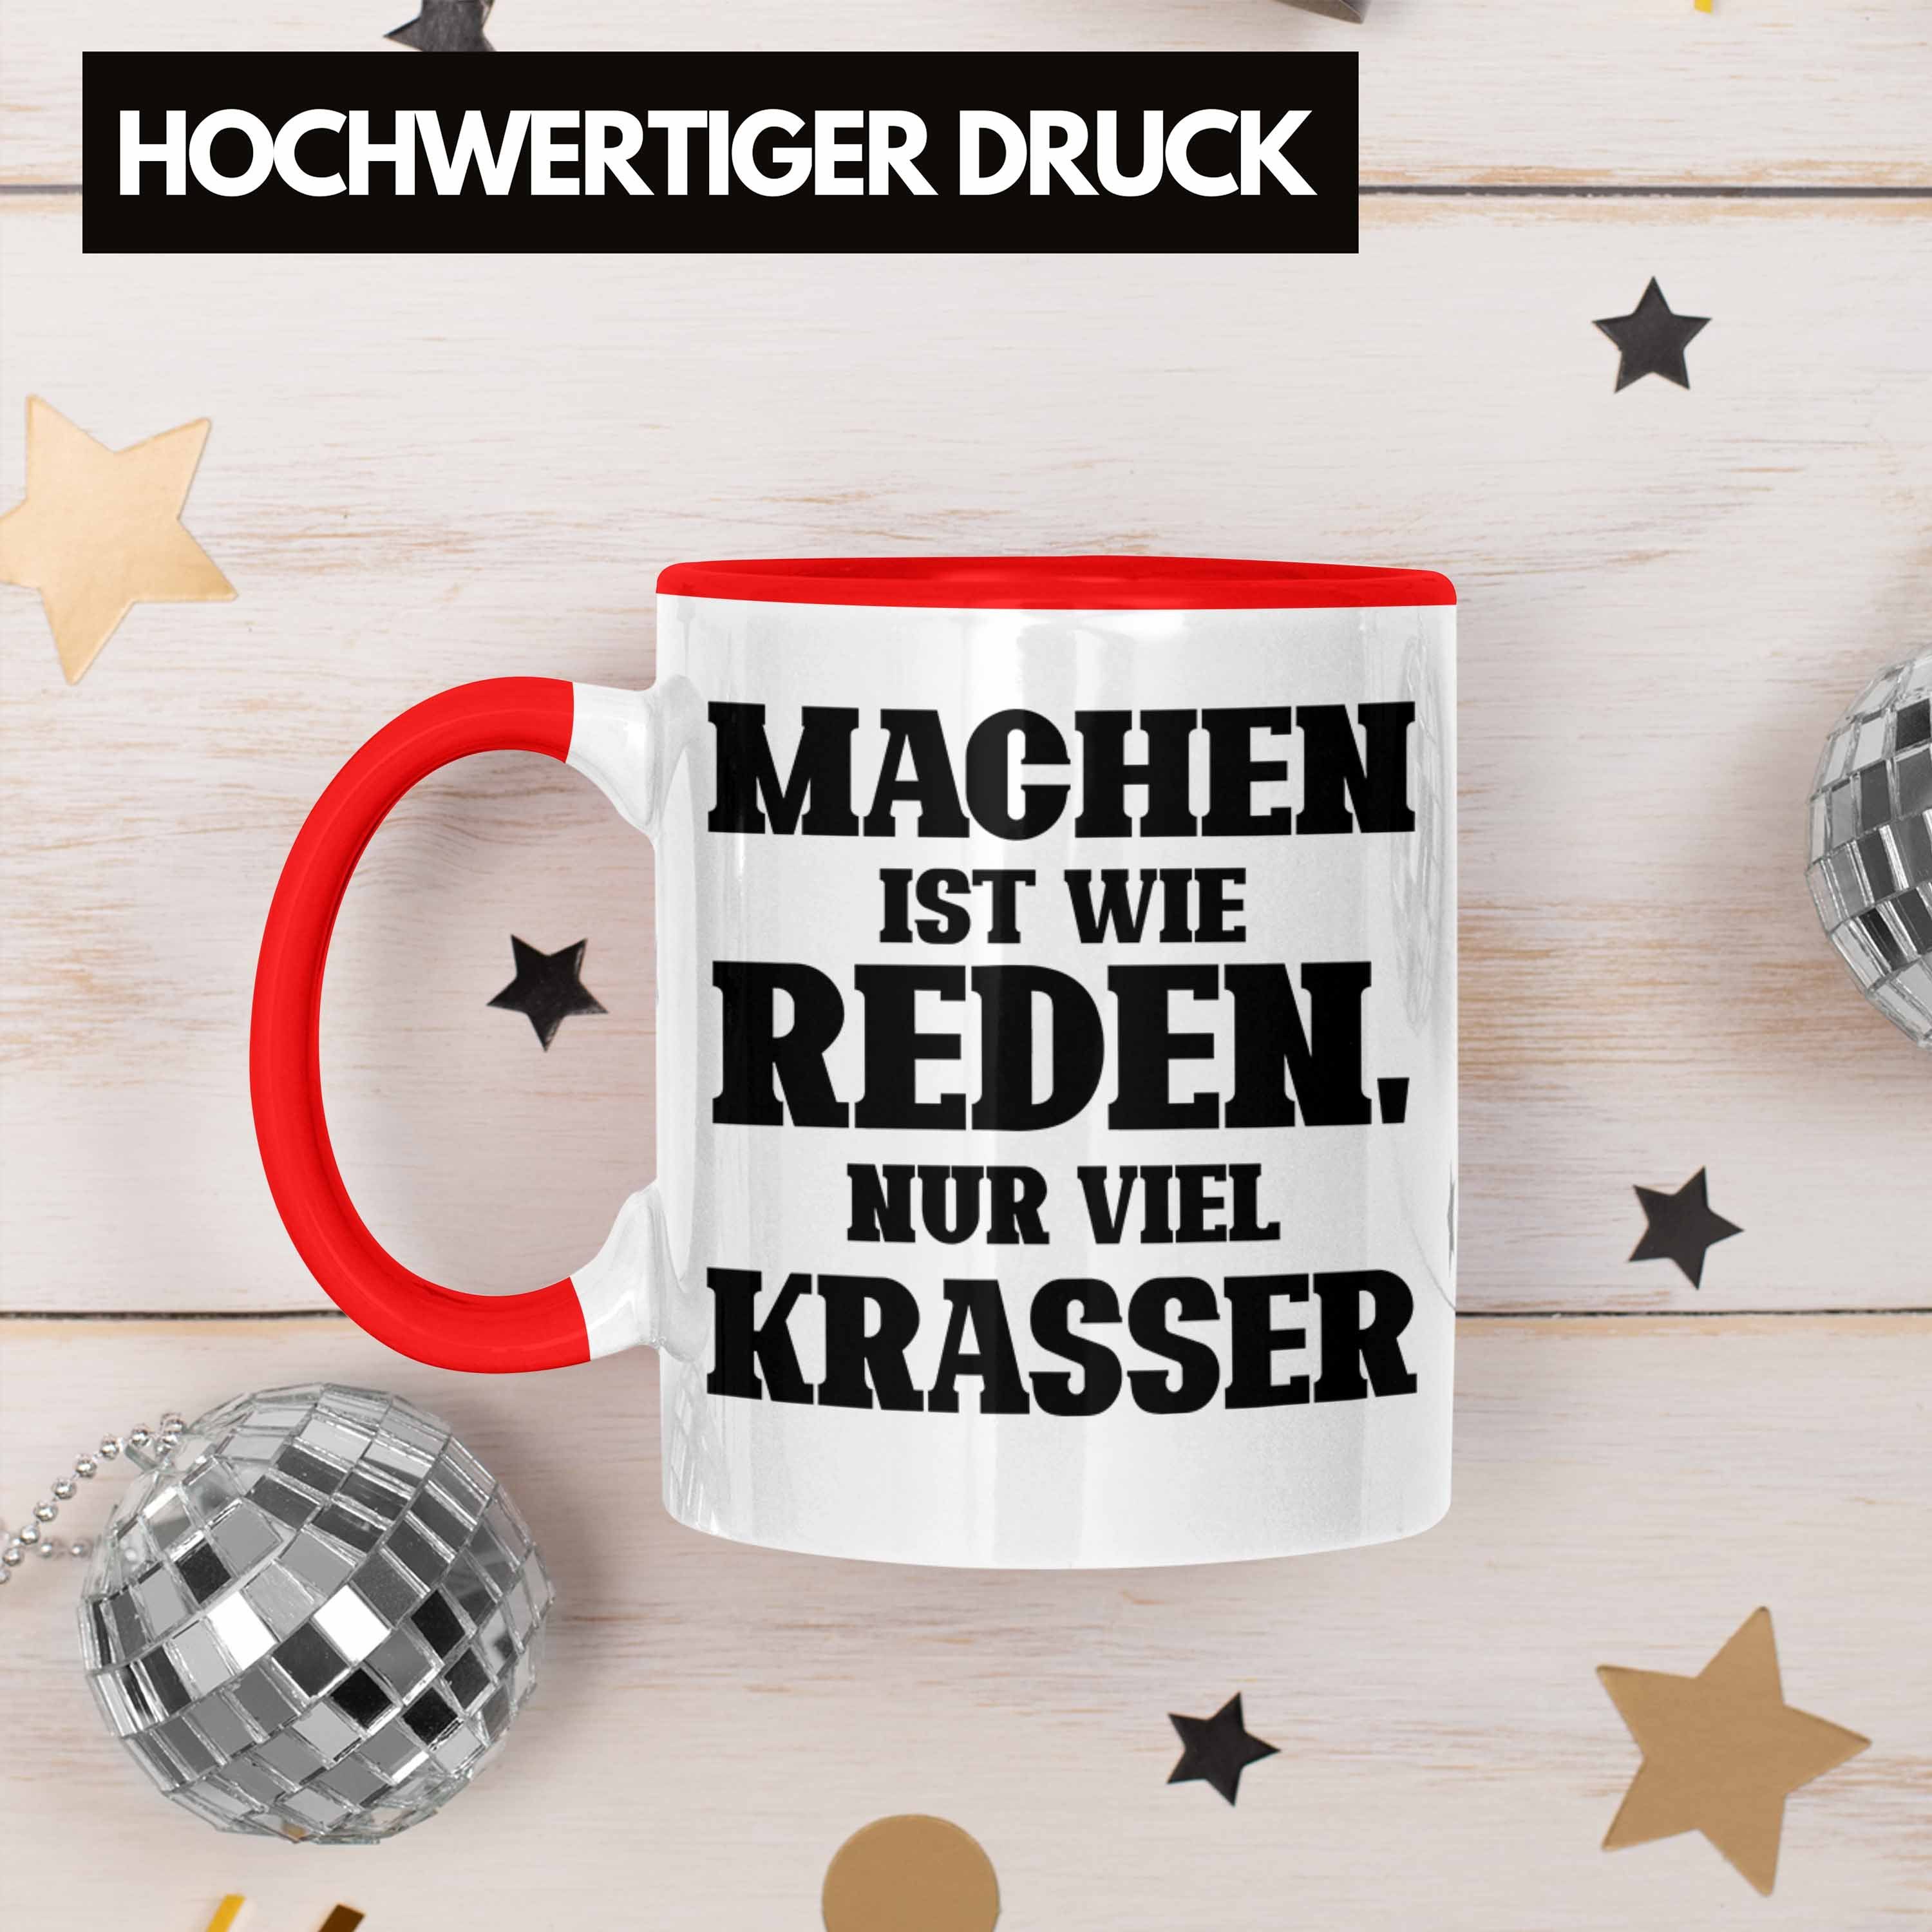 "Machen Wie Krasser" für Viel Rot Tasse Mac Reden Ist Geschenk Trendation Tasse Lustige Nur